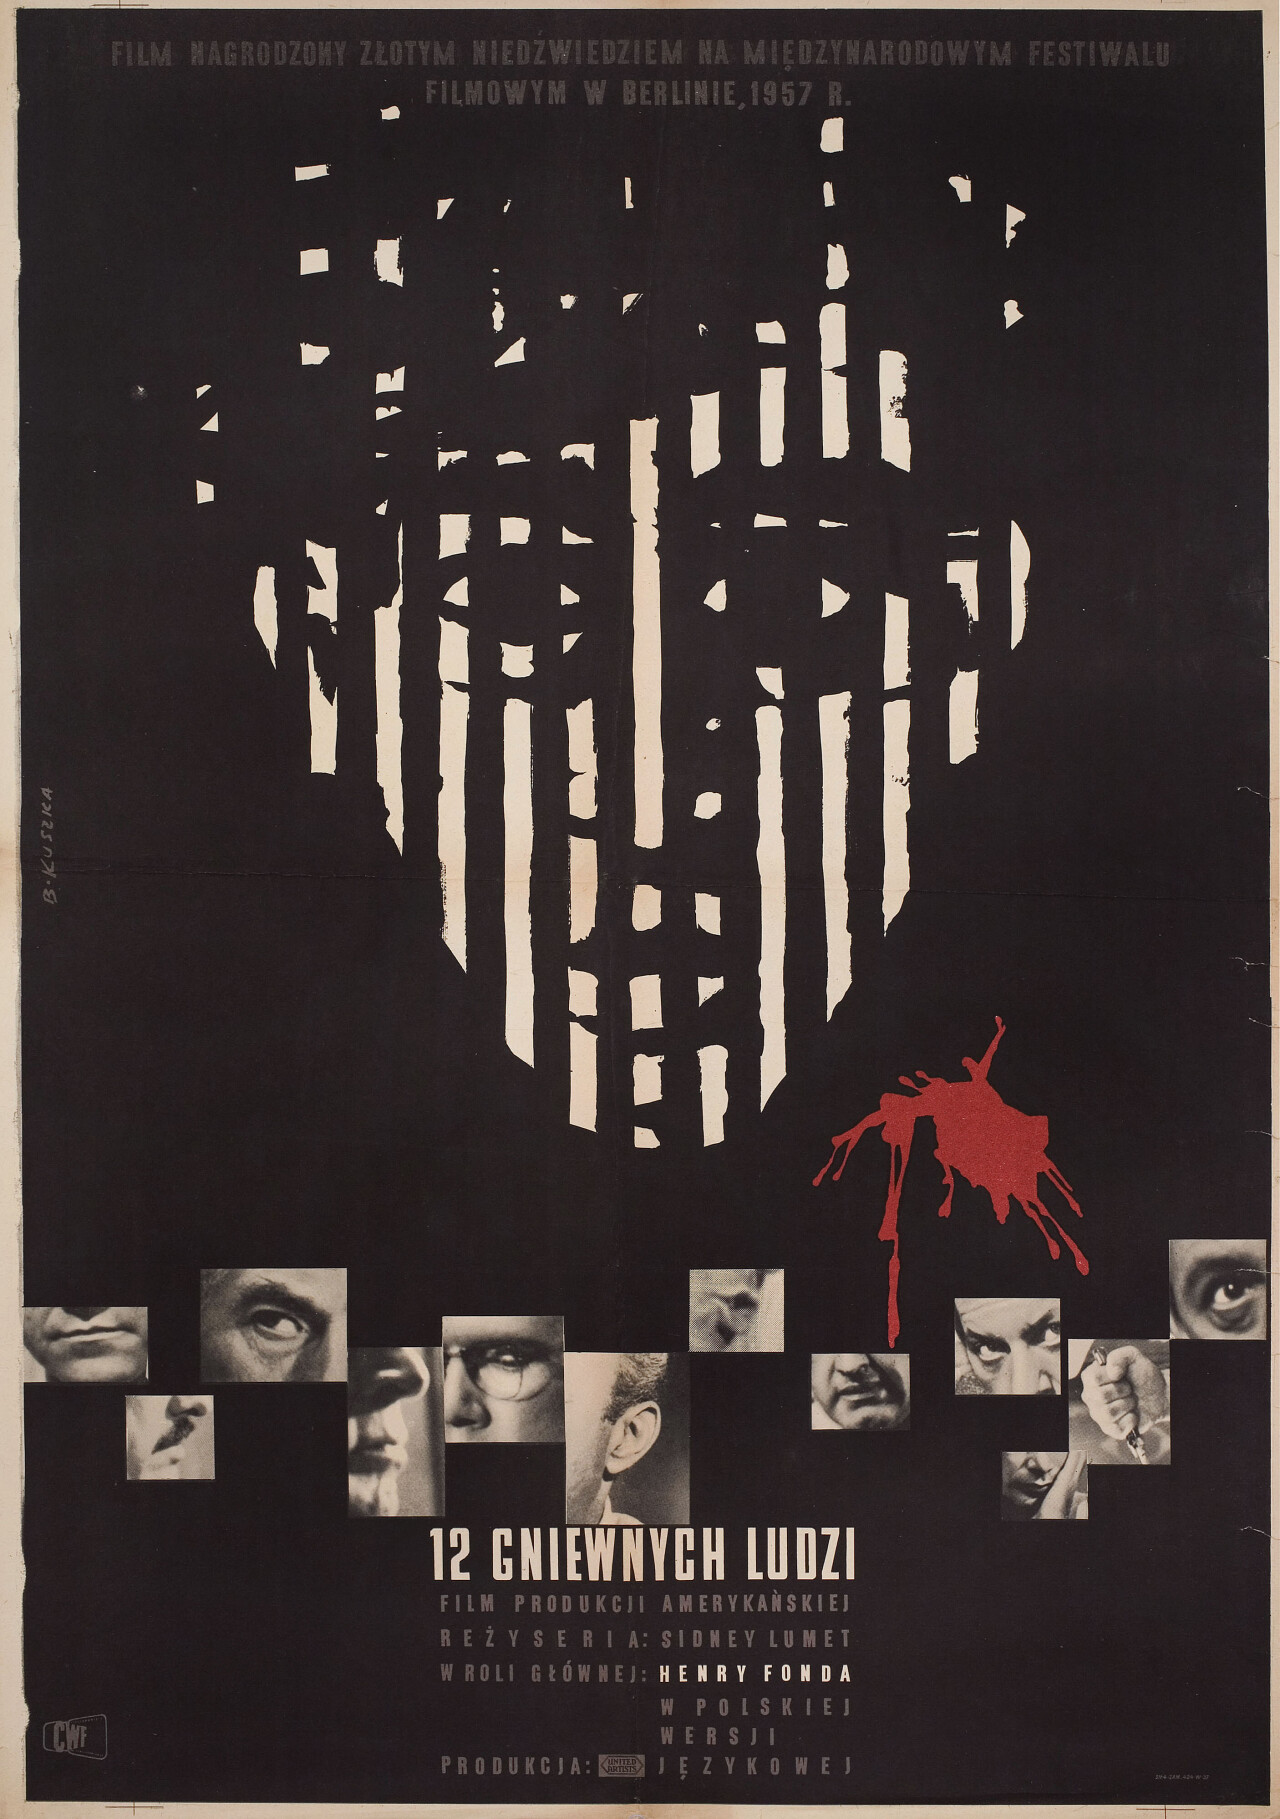 12 разгневанных мужчин, (12 Angry Men 1957), режиссёр Сидни Люмет, польский постер к фильму, автор Б. Кушка (графический дизайн, 1957 год)